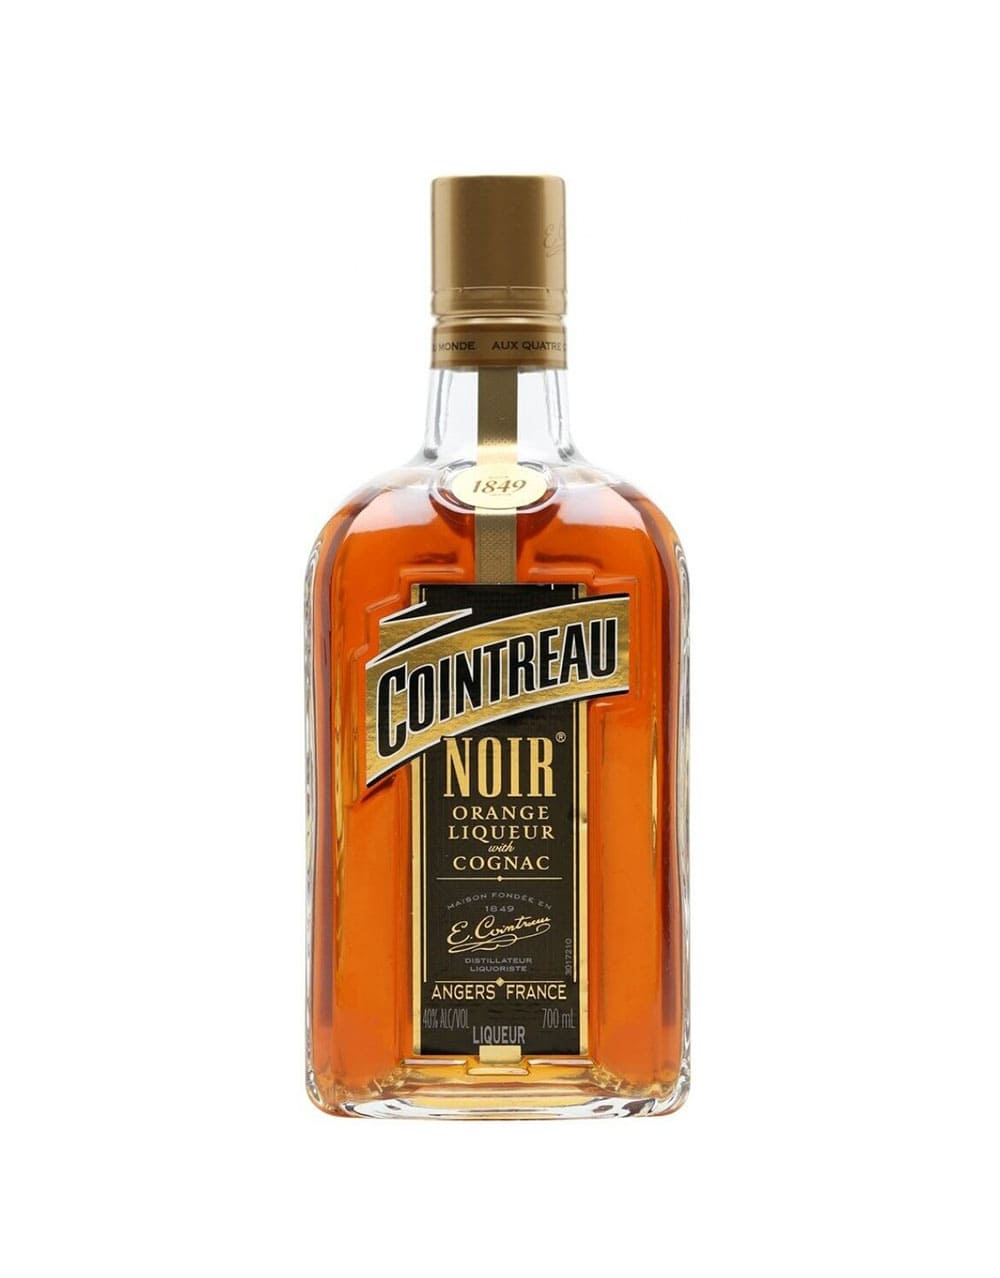 Cointreau Noir Orange Liqueur With Cognac